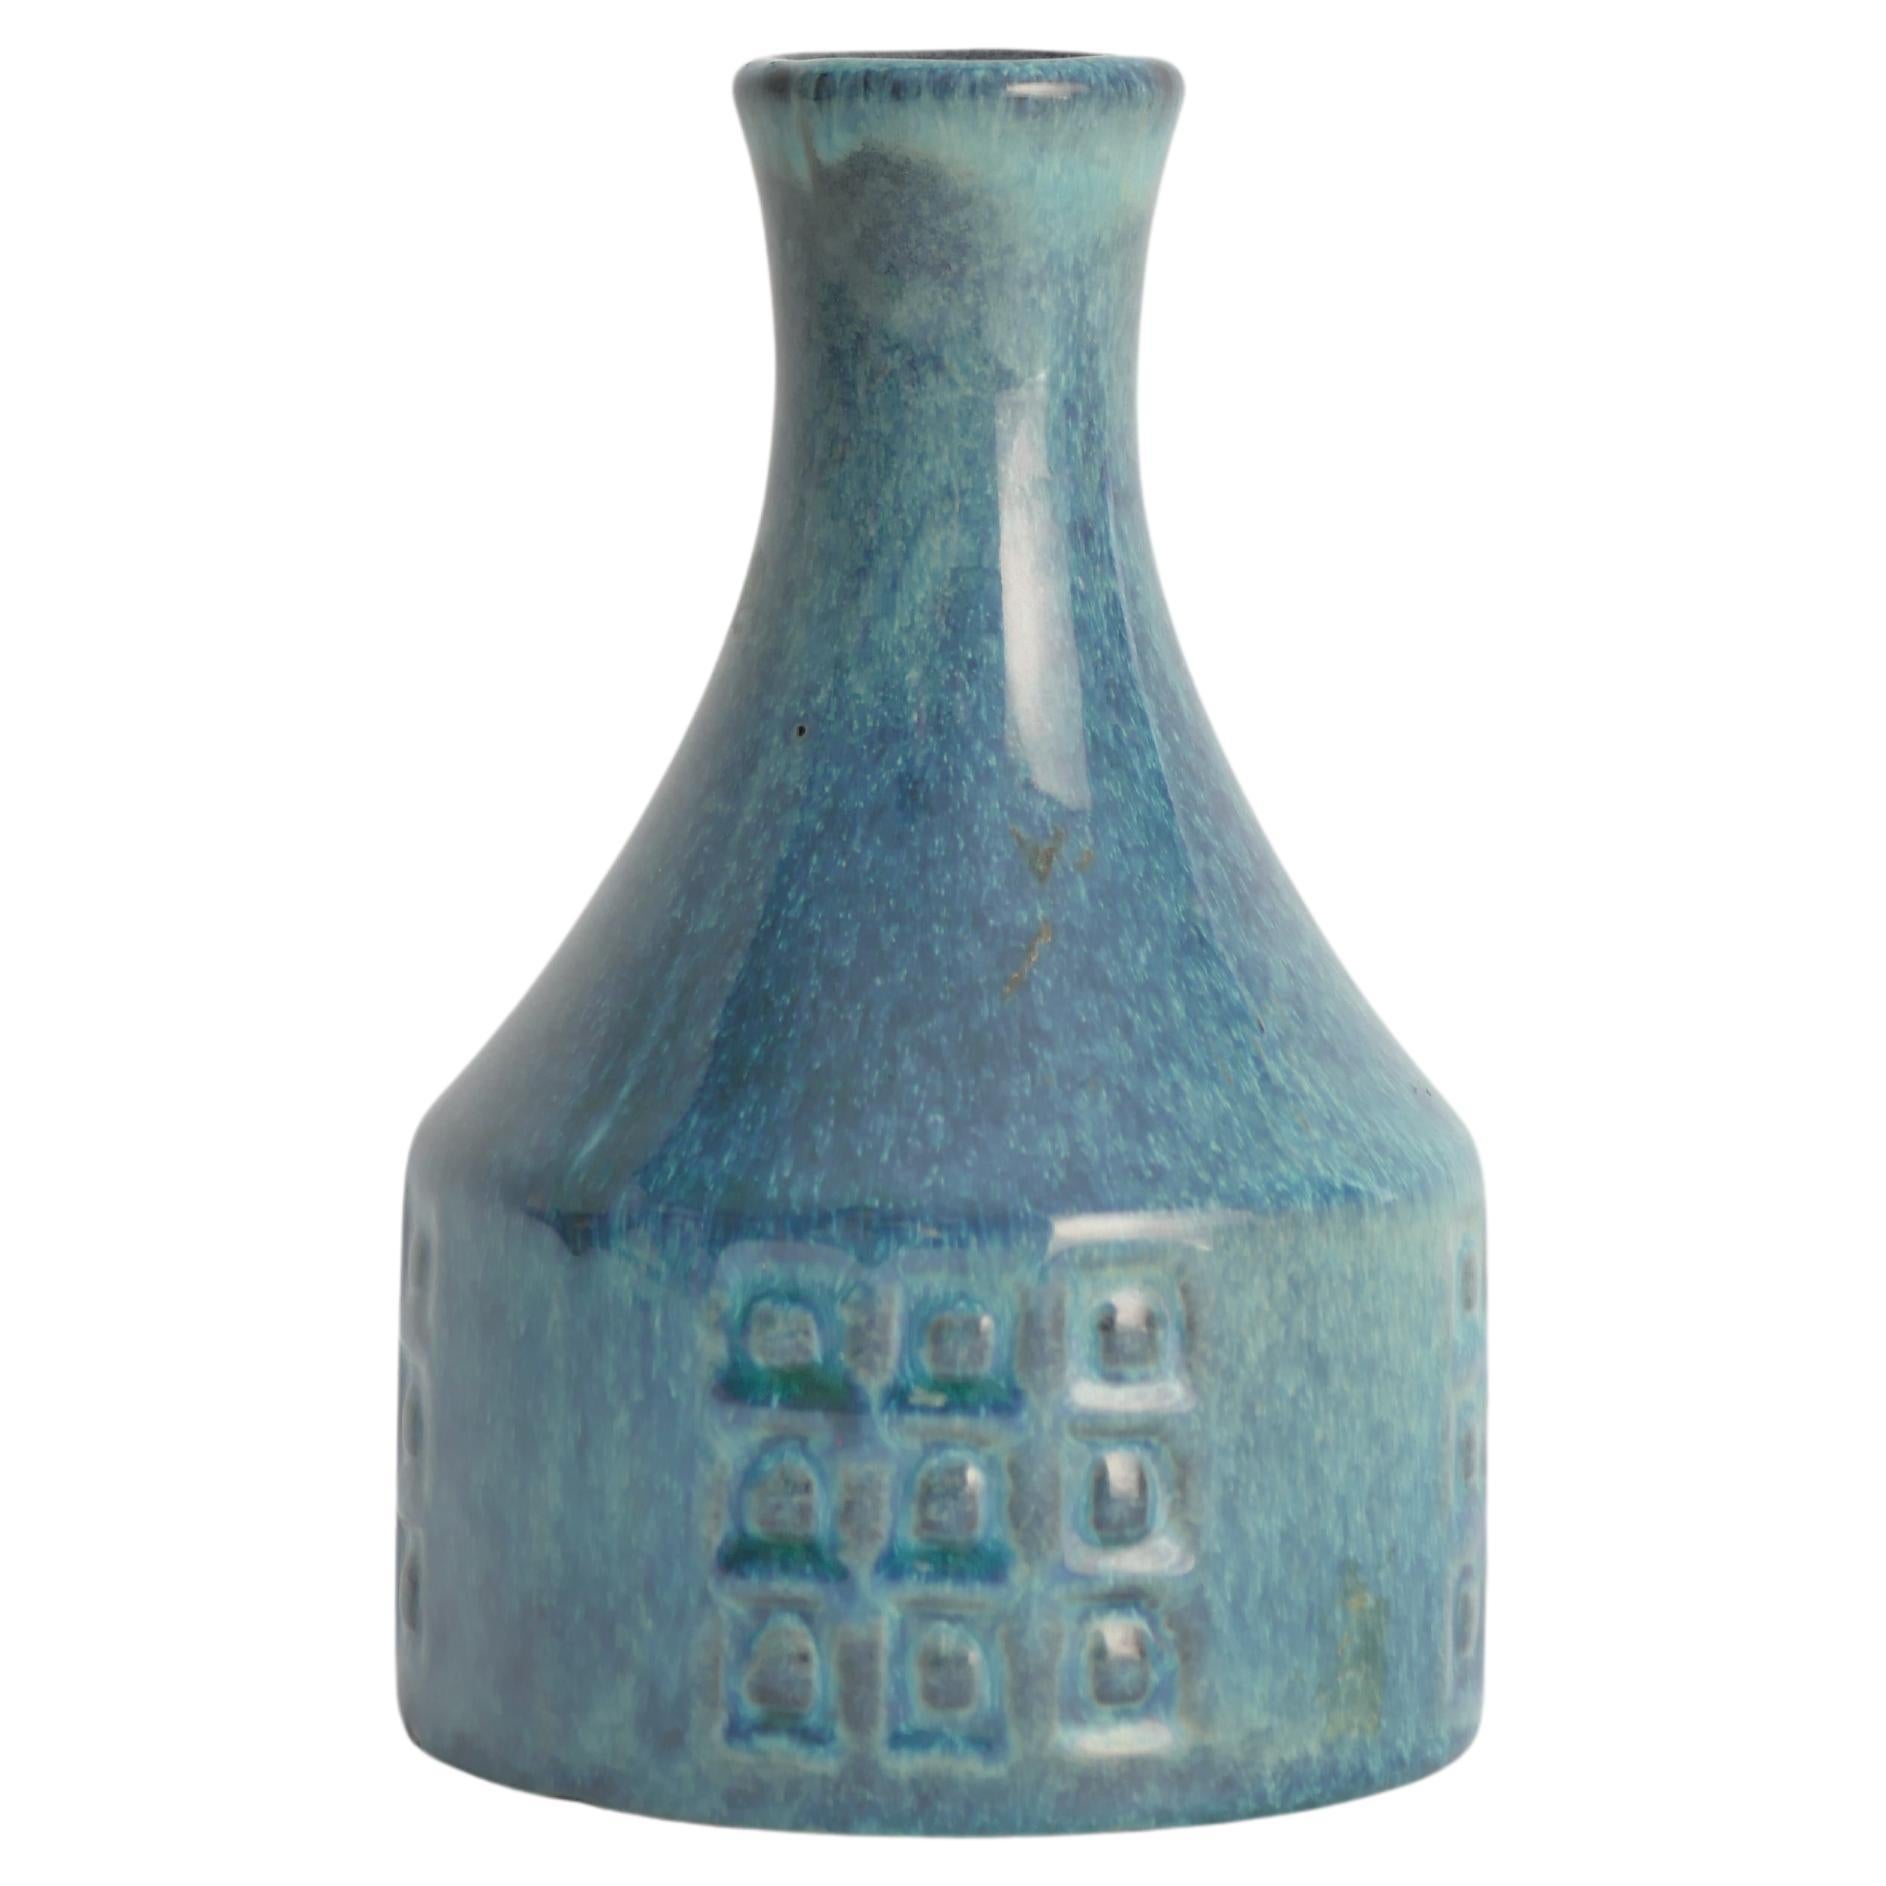 Vase en céramique moderne scandinave avec glaçure turquoise chatoyante de JIE Gantofta